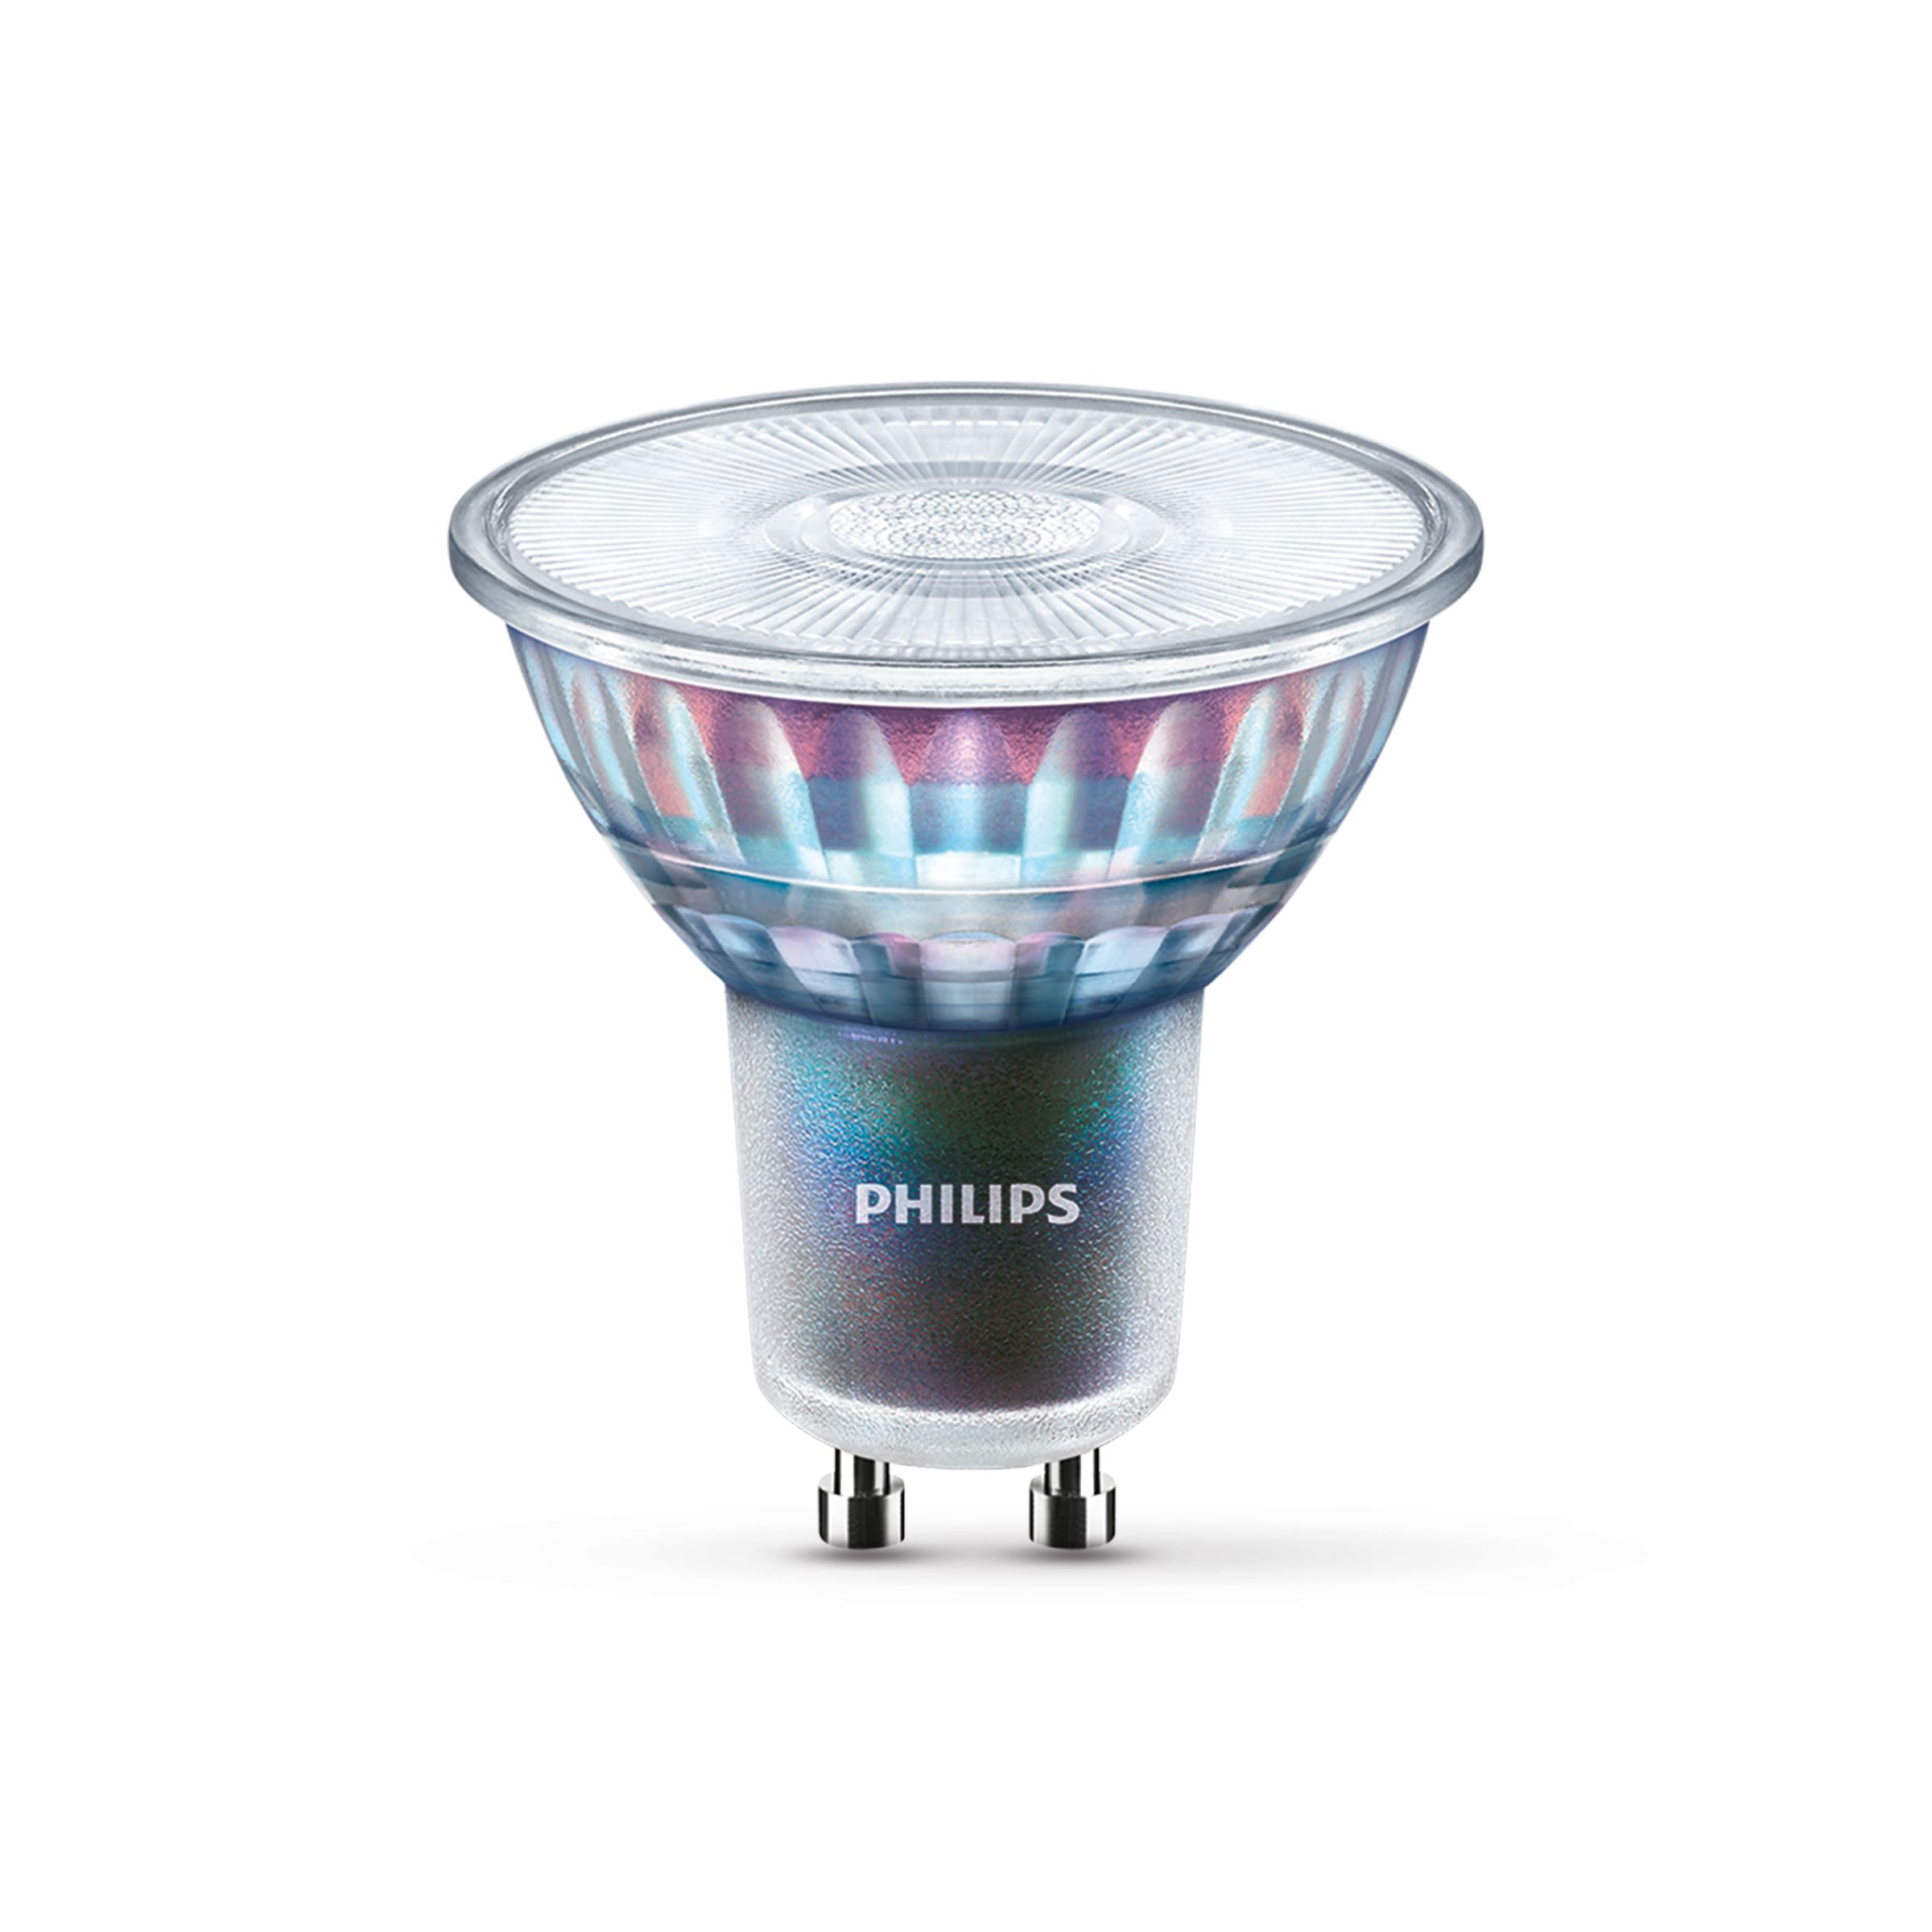 Philips 533221716 LED Spot Light Wandleuchte Wandspot Balla Chrom Matt 2x4W 